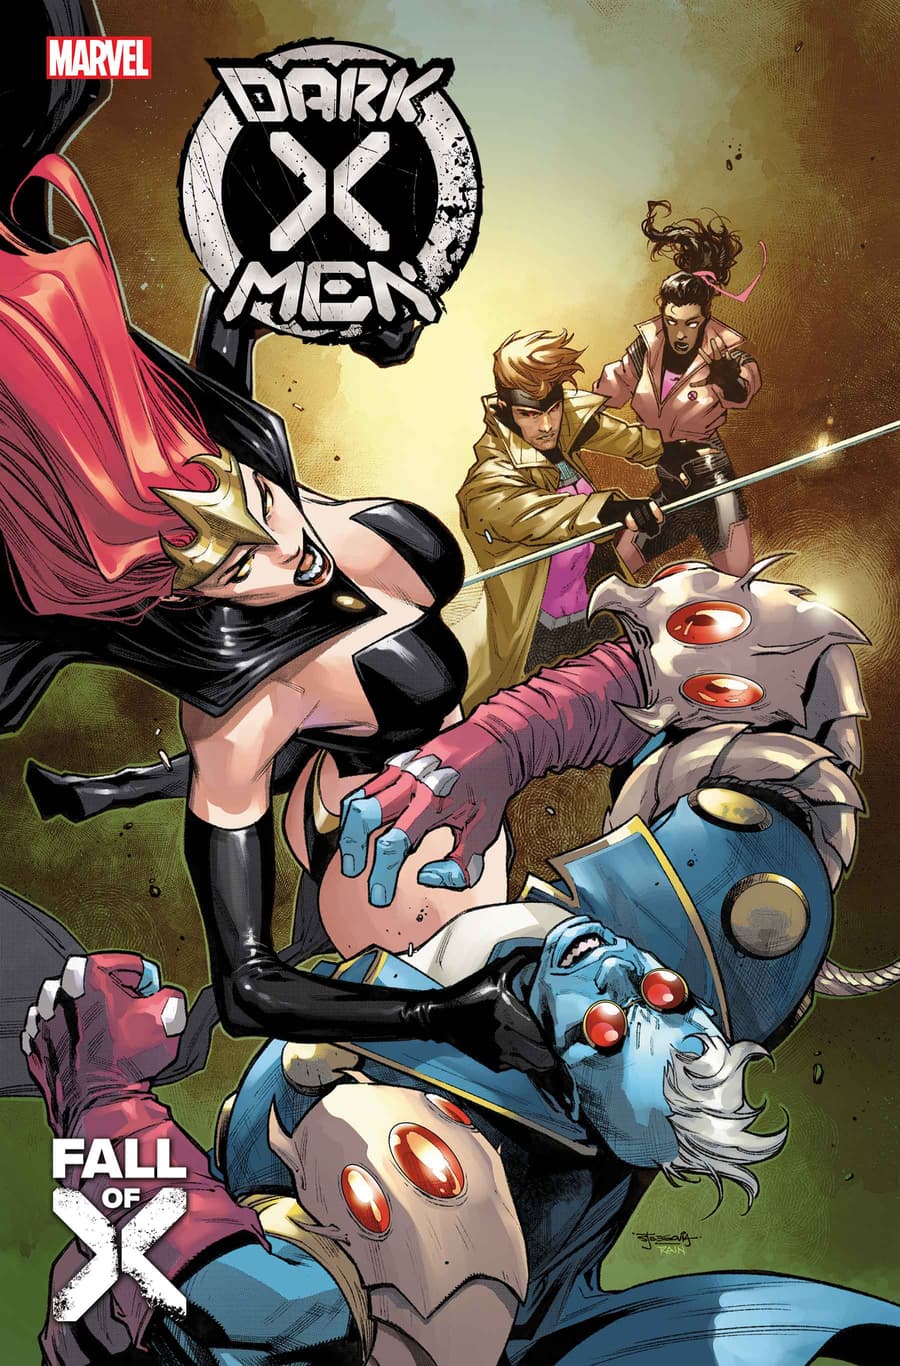 DARK X-MEN #2 (OF 5) cover by Stephen Segovia